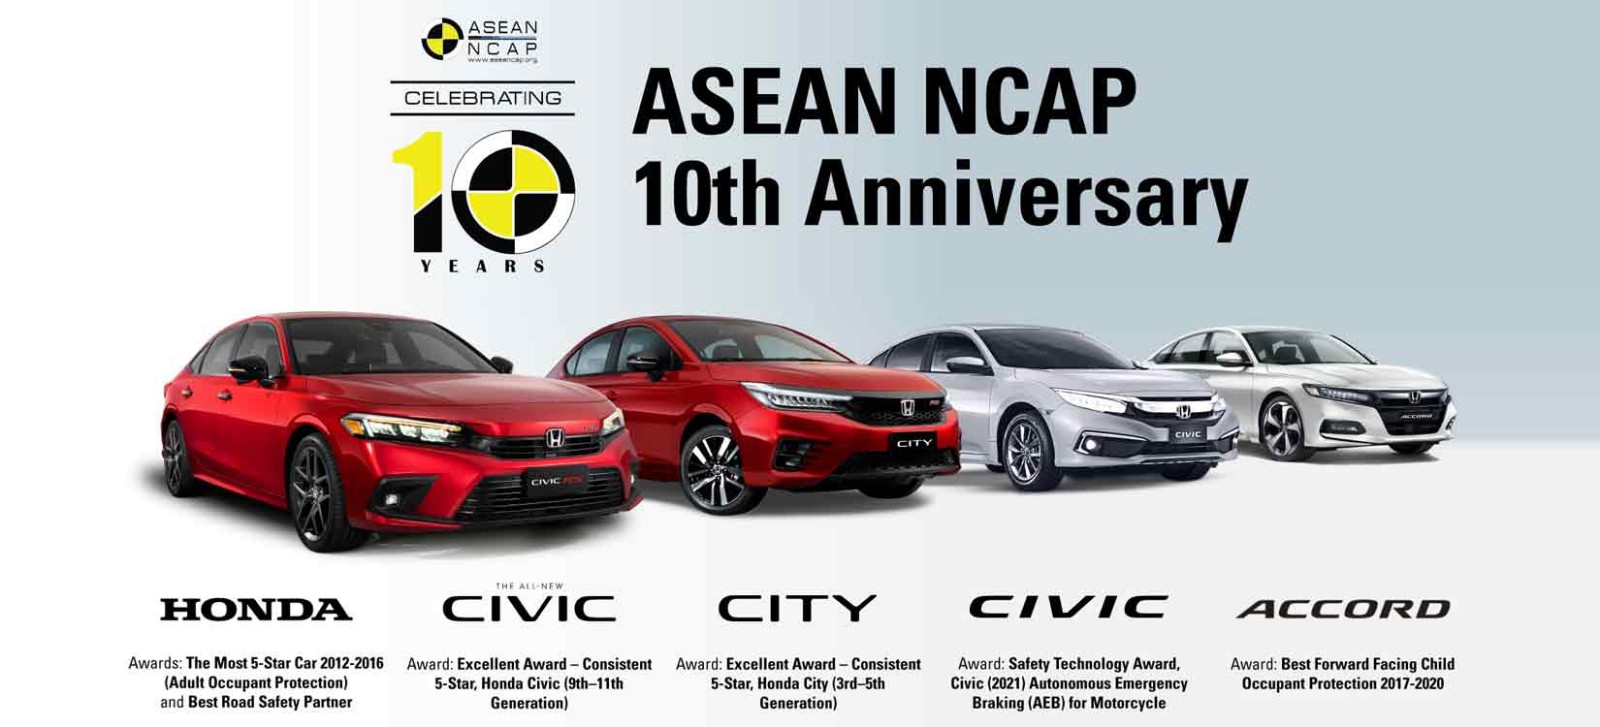 Honda Wins 6 Awards at ASEAN NCAP 10th Anniversary